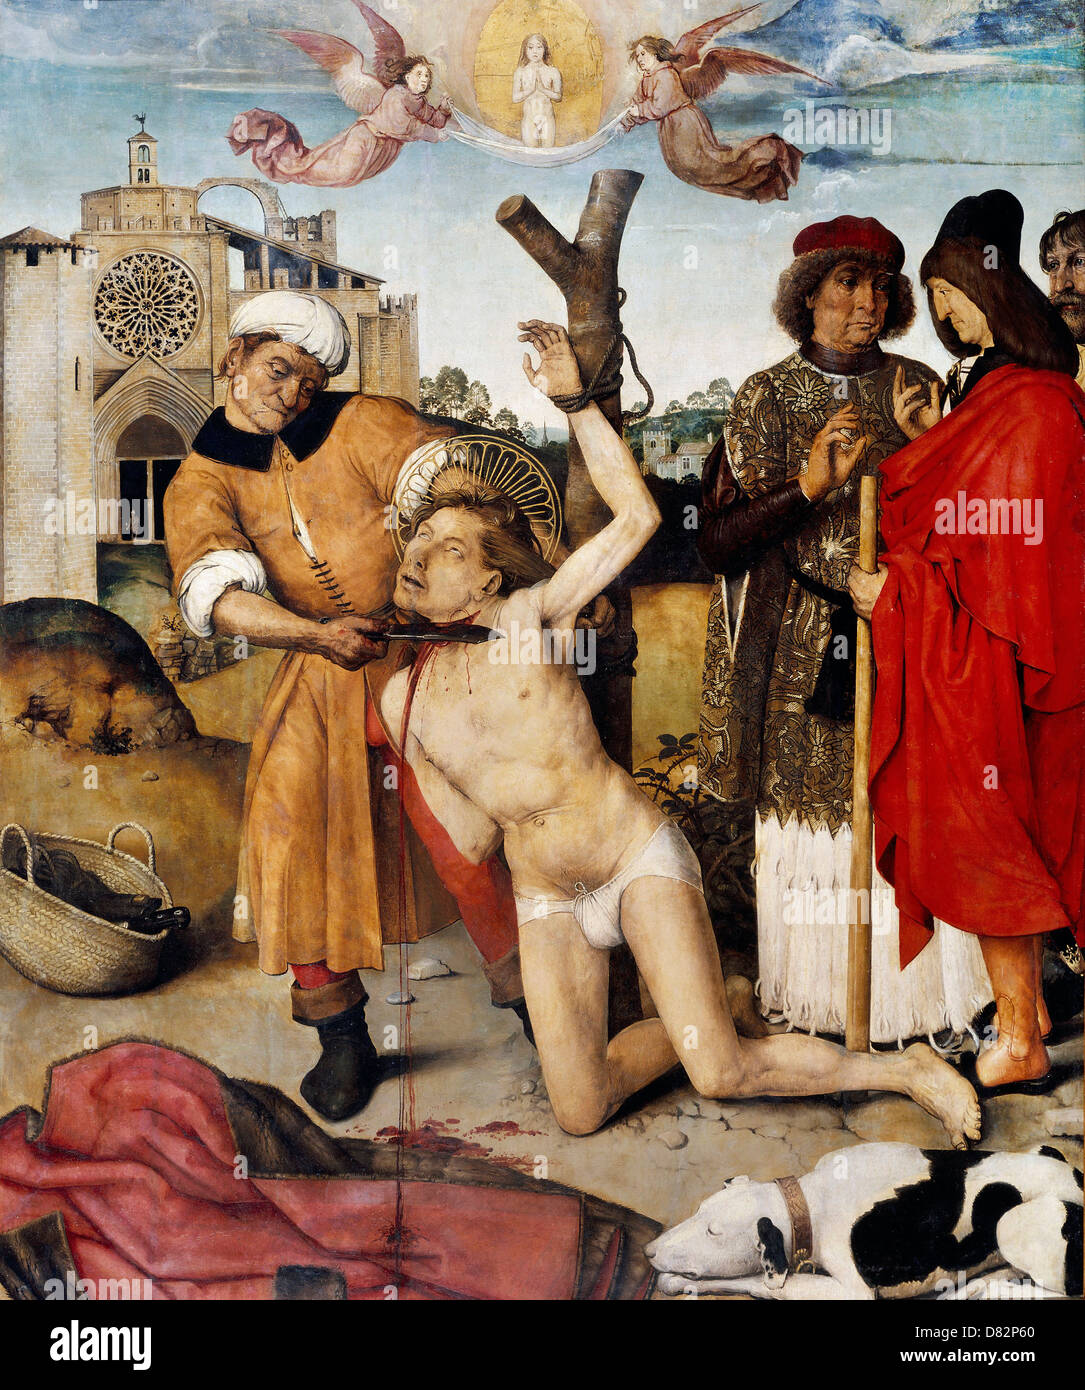 Robert Campin, Le Martyre de Saint Cucuphas 1502-1507 Huile sur bois. Museu Nacional d'Art de Catalunya, Barcelone, Espagne. Banque D'Images